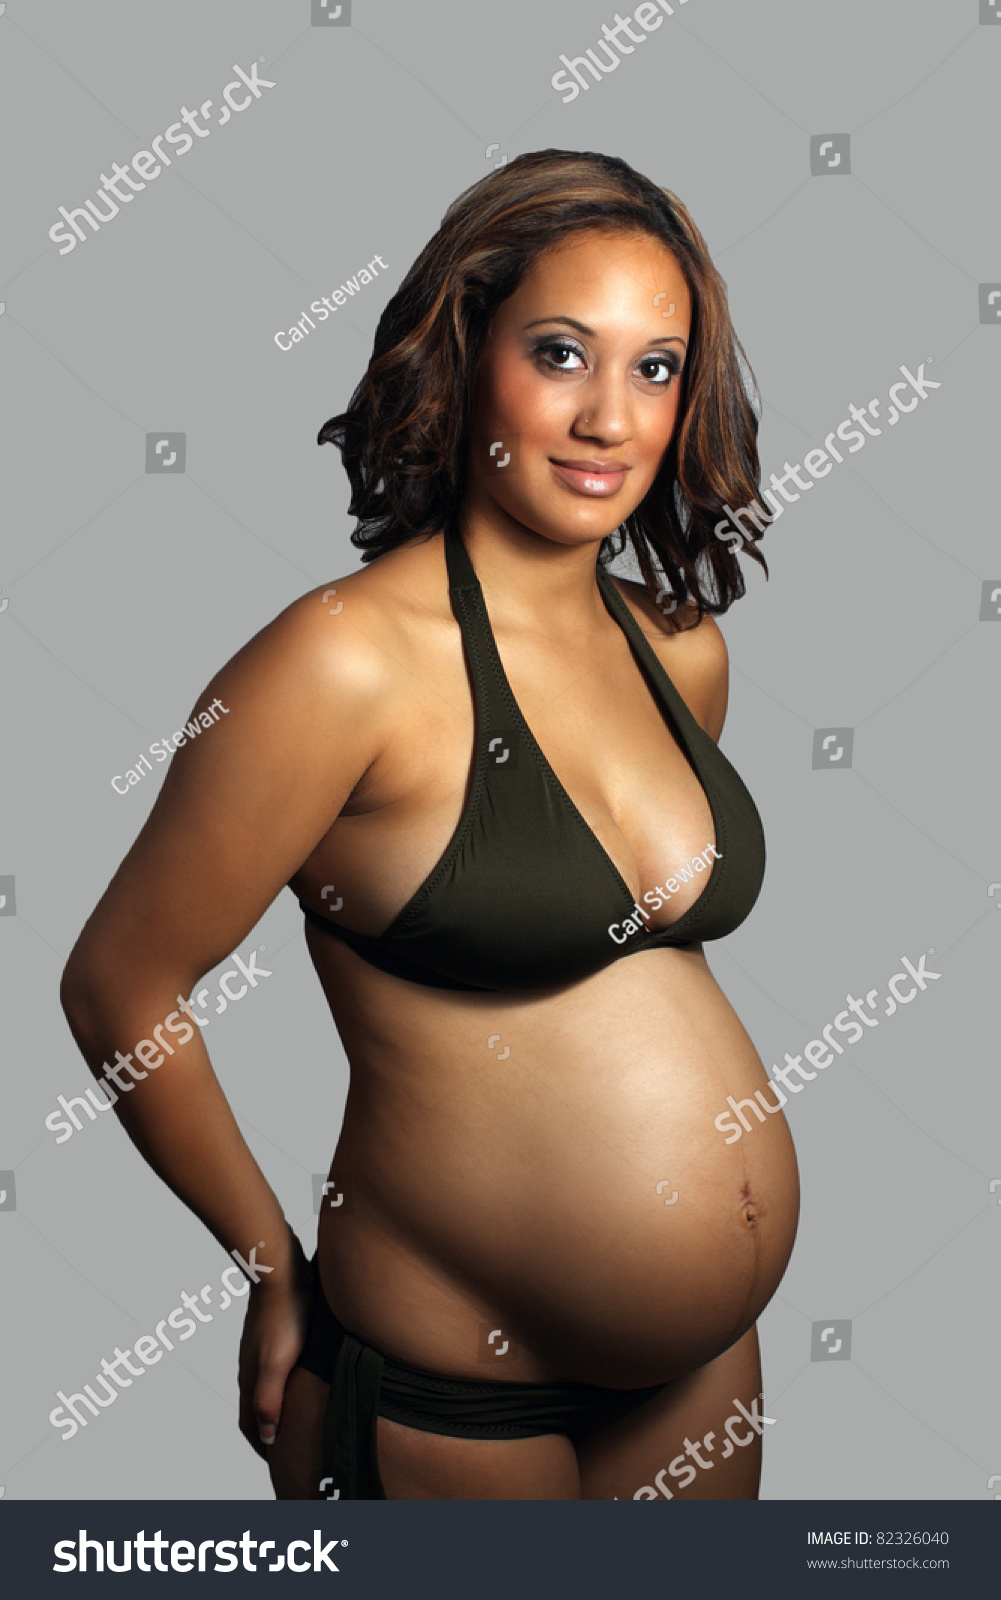 Best of Pregnant ladies in bikinis